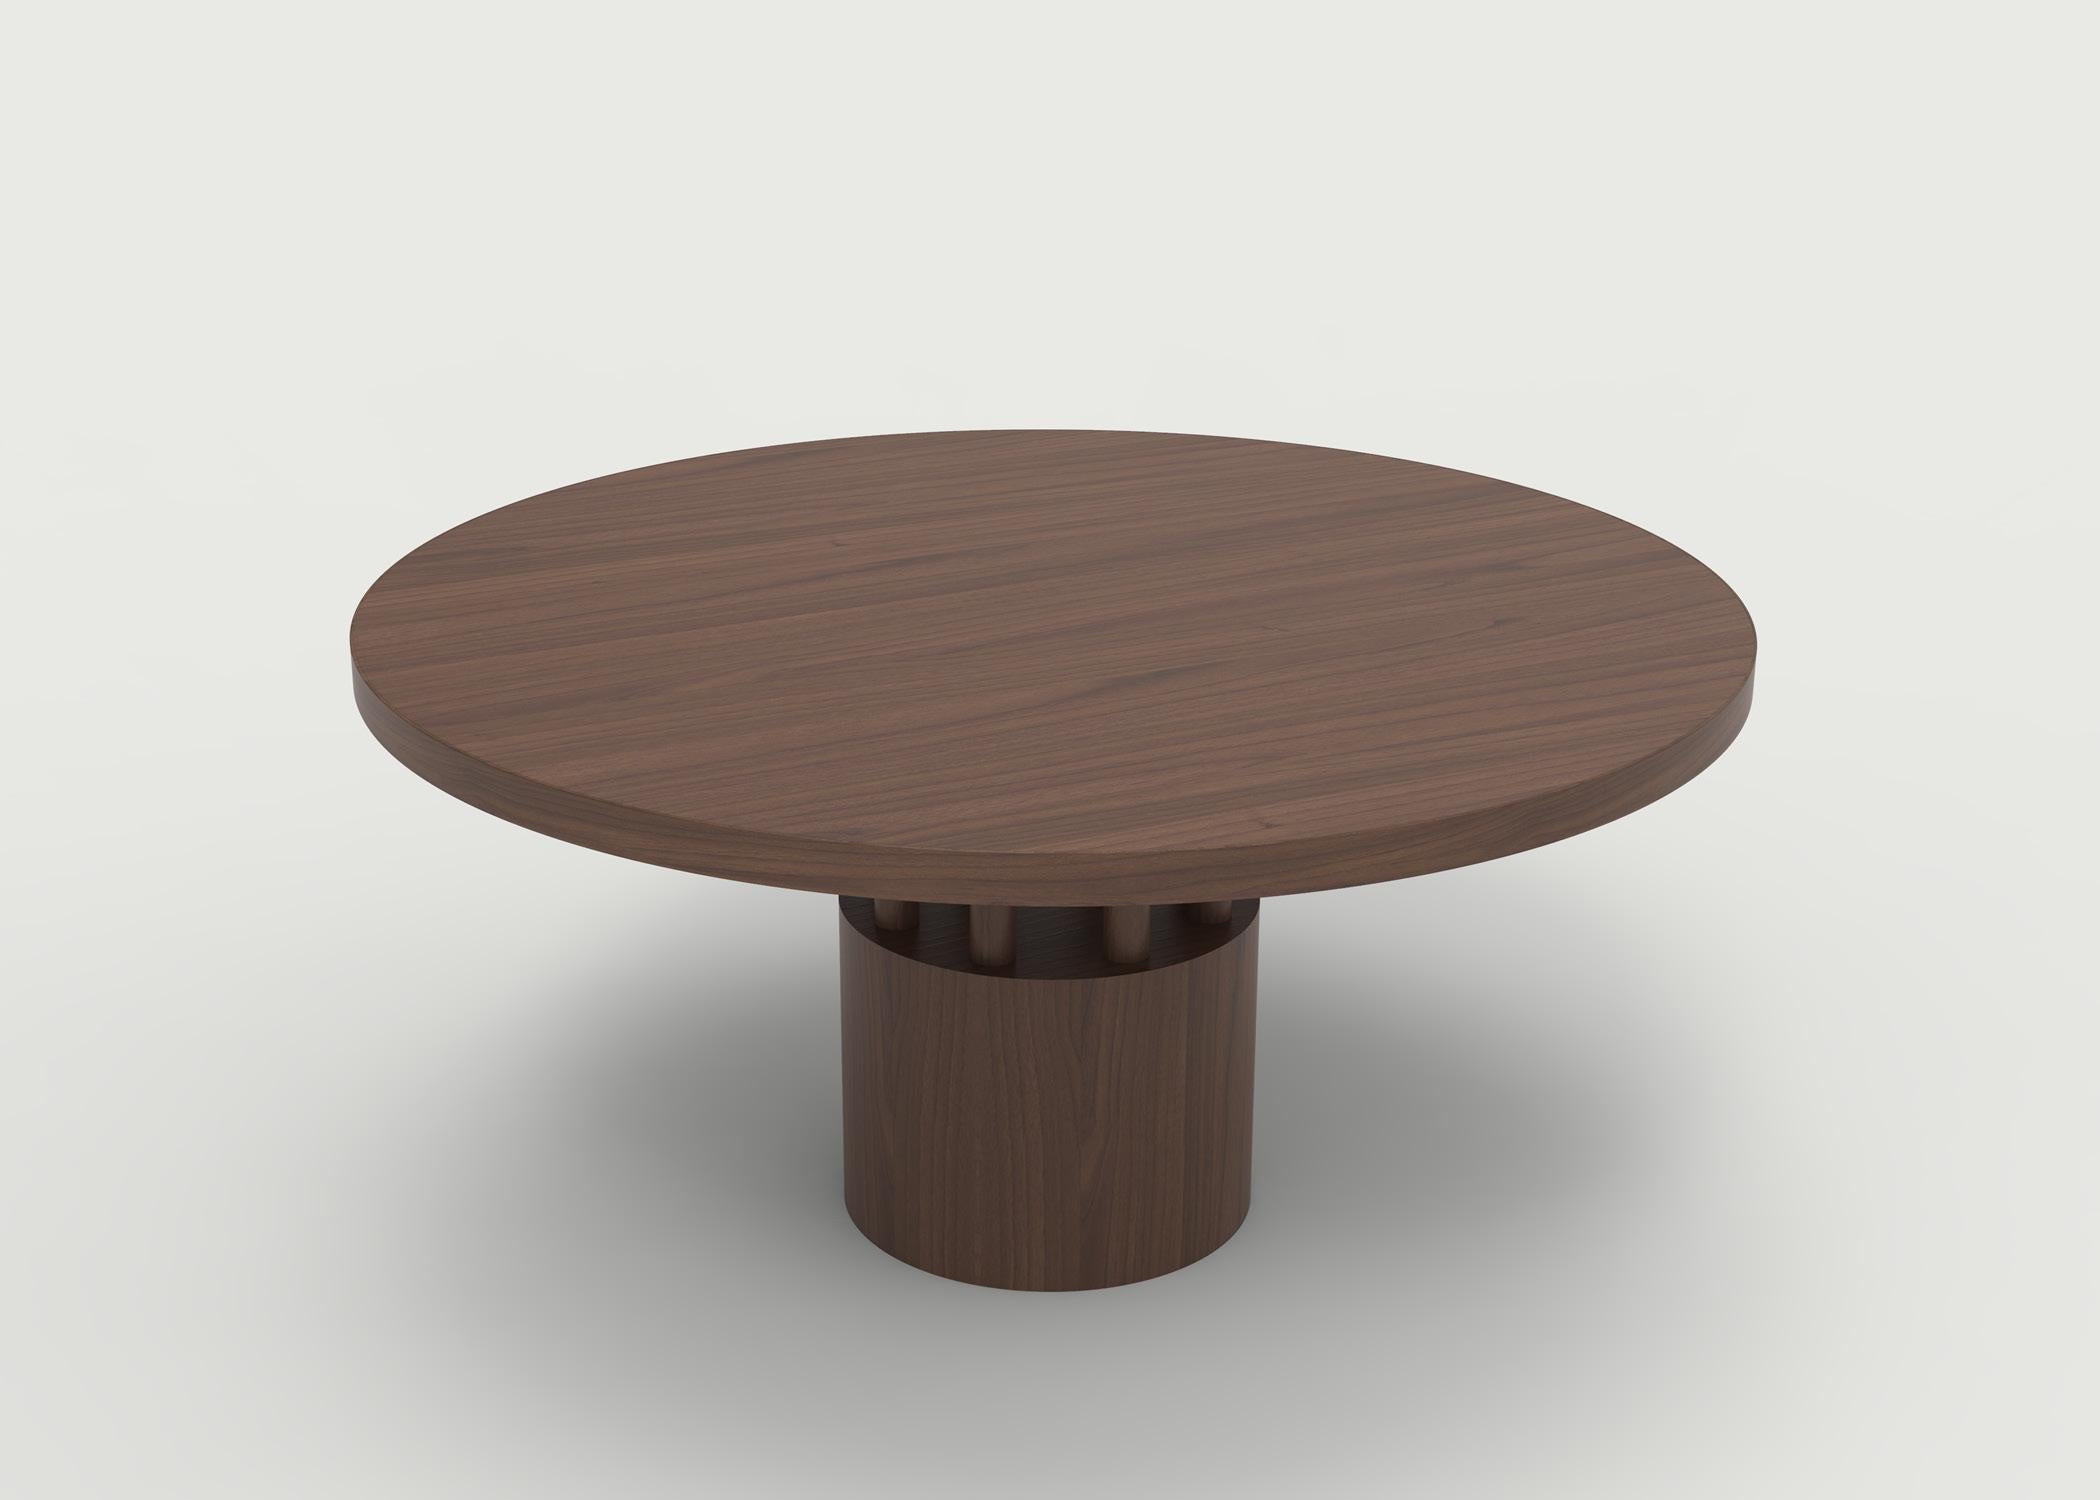 Der Fulton-Esstisch ist das Gegenstück zu unserem Benson-Couchtisch - eine runde Platte mit sorgfältig ausgewählter Holzmaserung, um die Schönheit der Holzart hervorzuheben. Der Sockel und die darunter liegenden Pfosten verleihen einem sehr